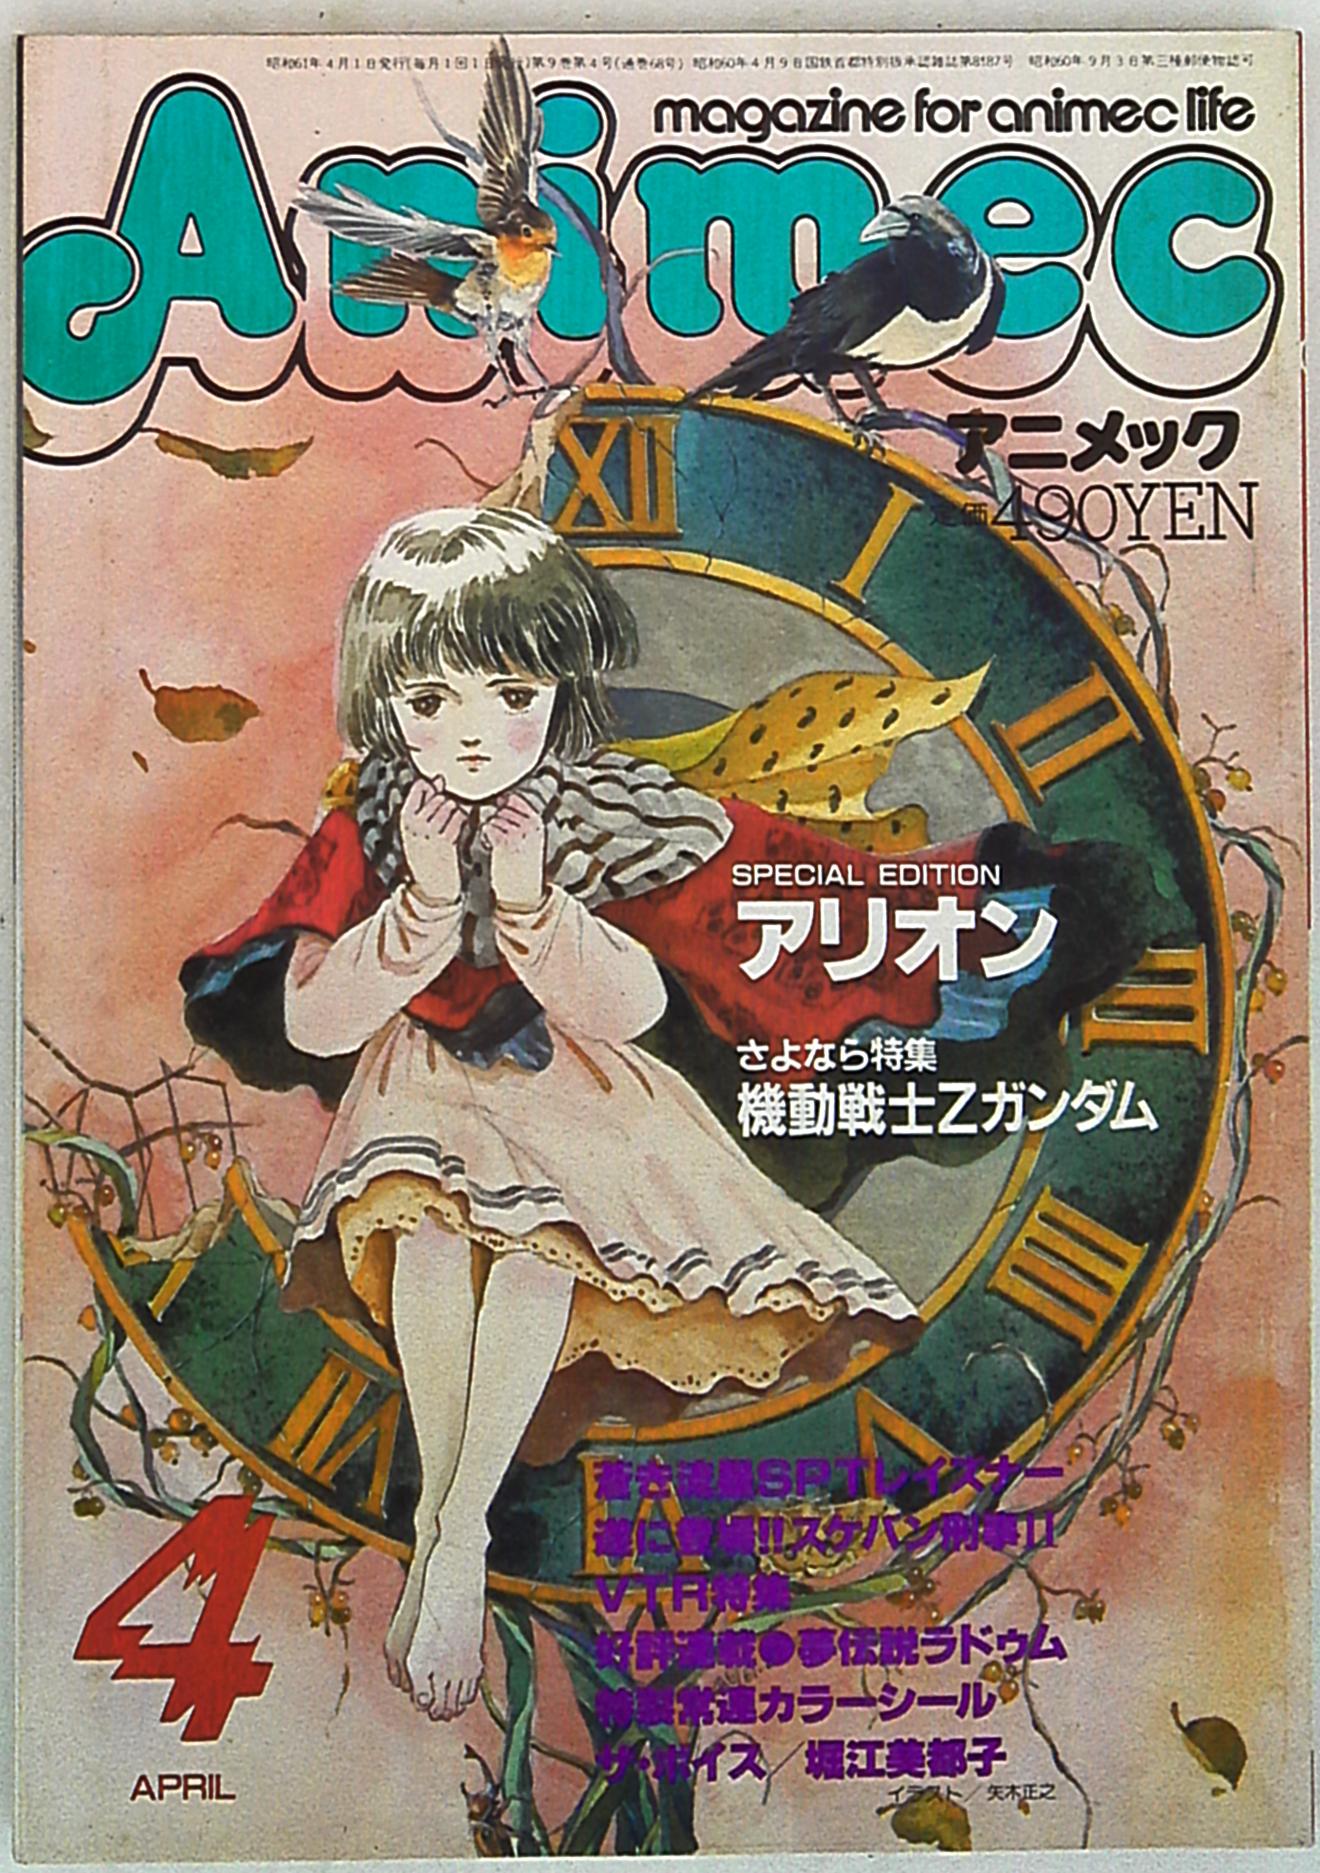 まんだらけ通販 ラポート 1986年 昭和61年 のアニメ雑誌 アニメック86 04 8604 札幌店からの出品